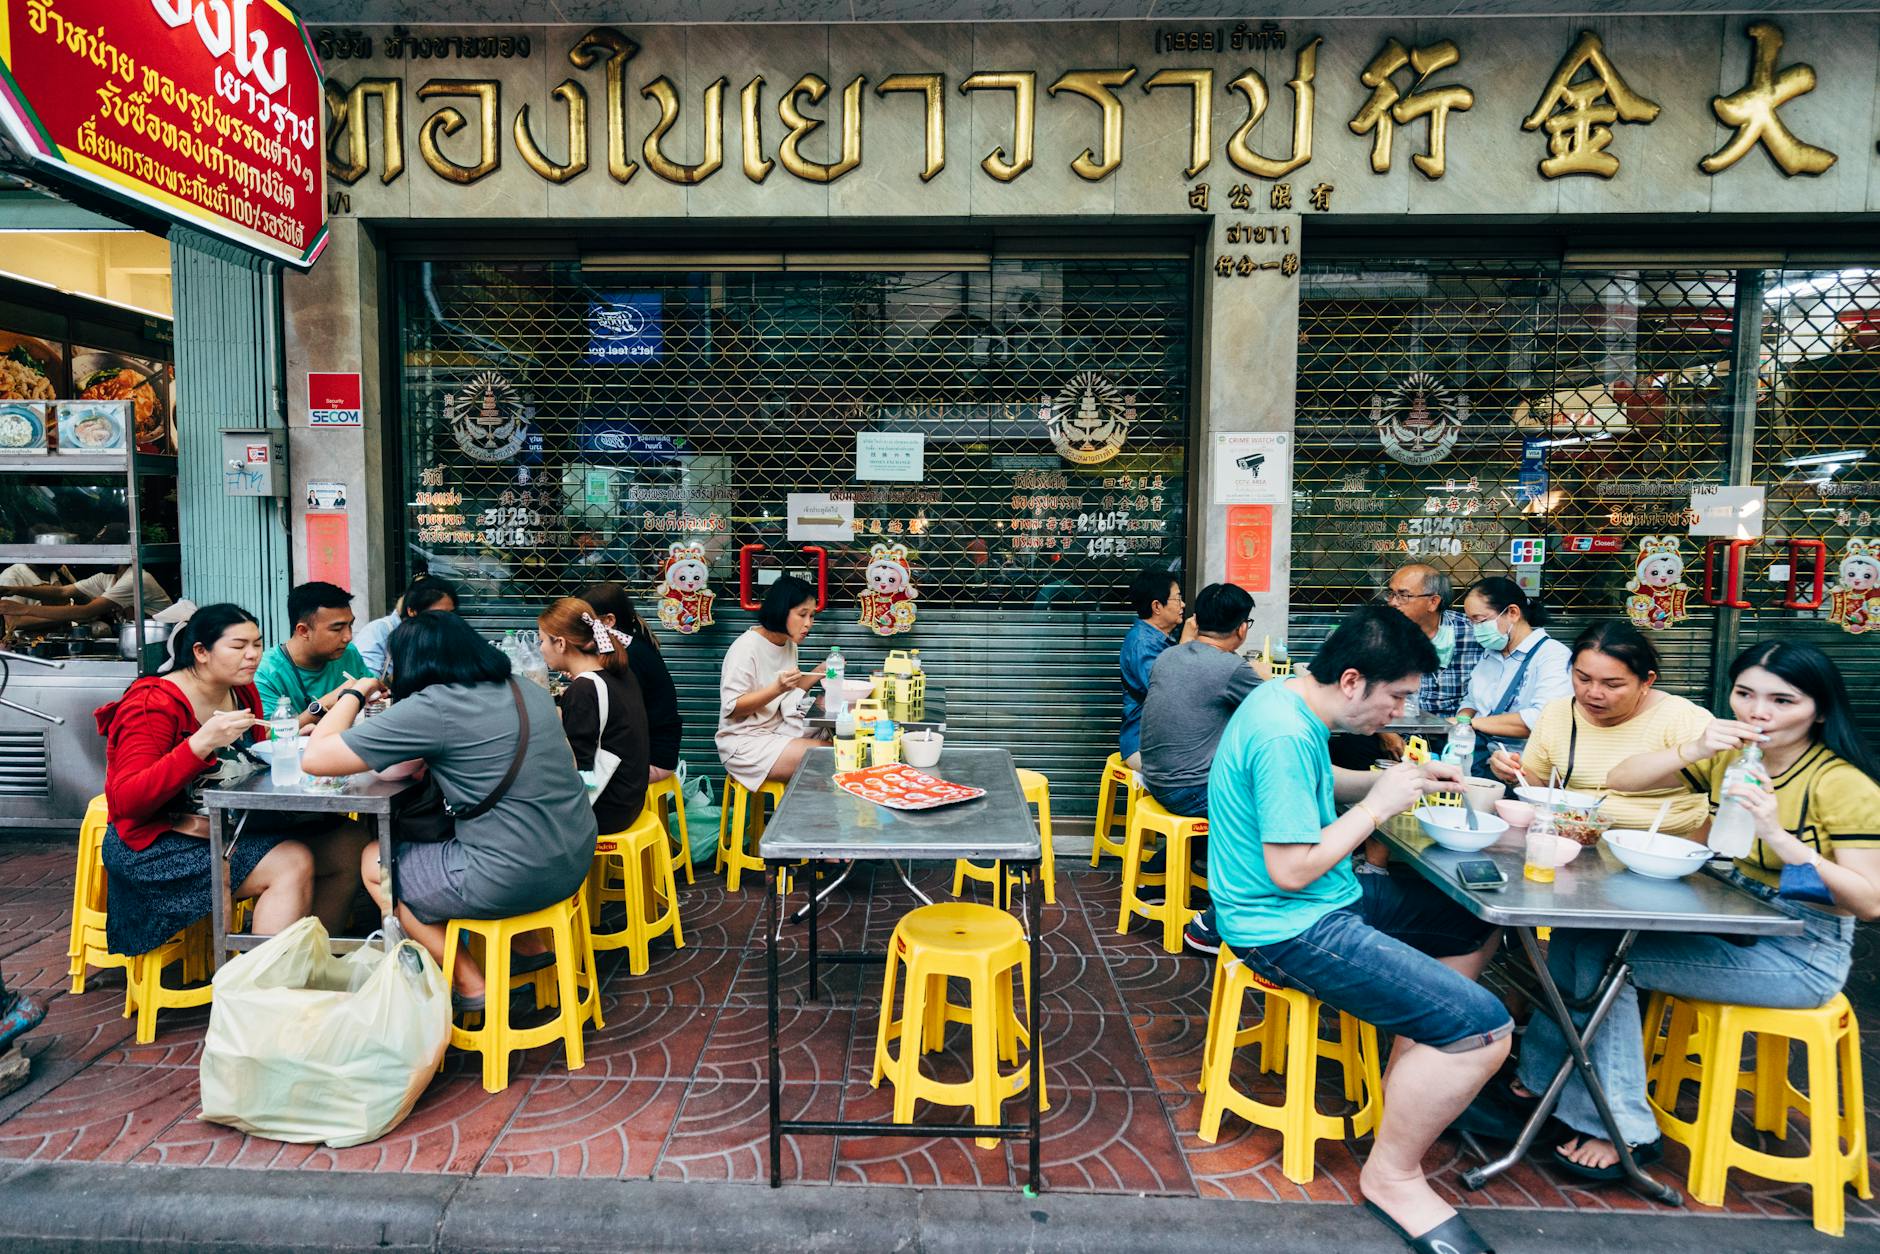 People Eating Street Food In Thai Restaurant